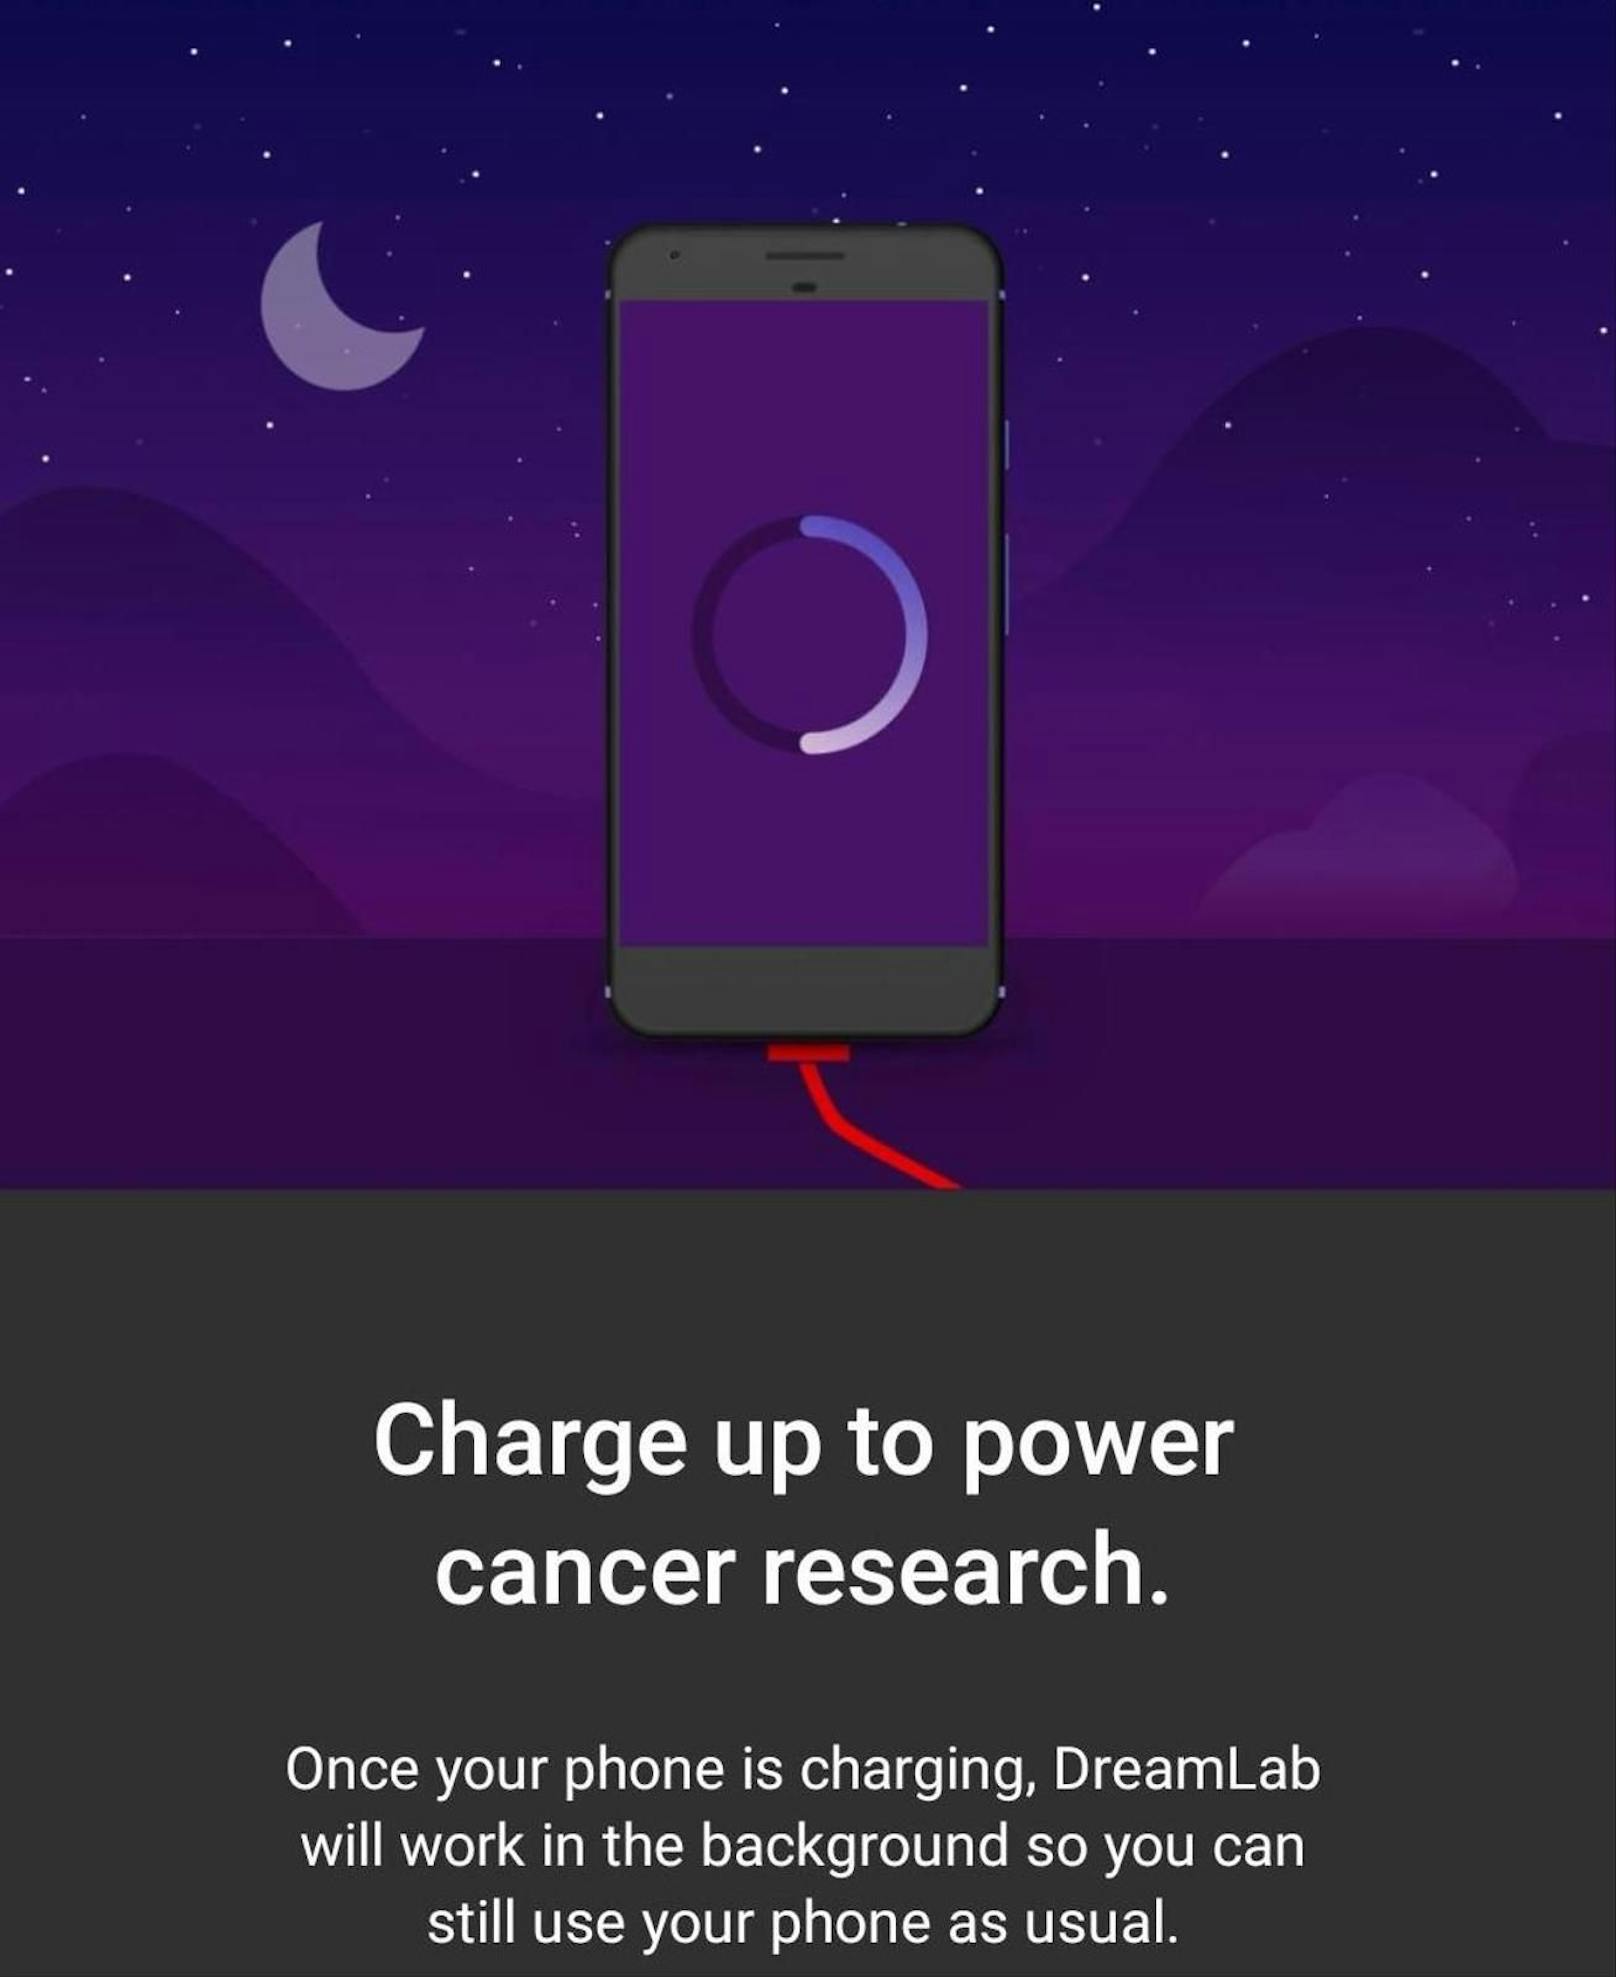 Ein weiteres Forschungsprojekt, das durch die App unterstützt wird, befasst sich mit Krebs.